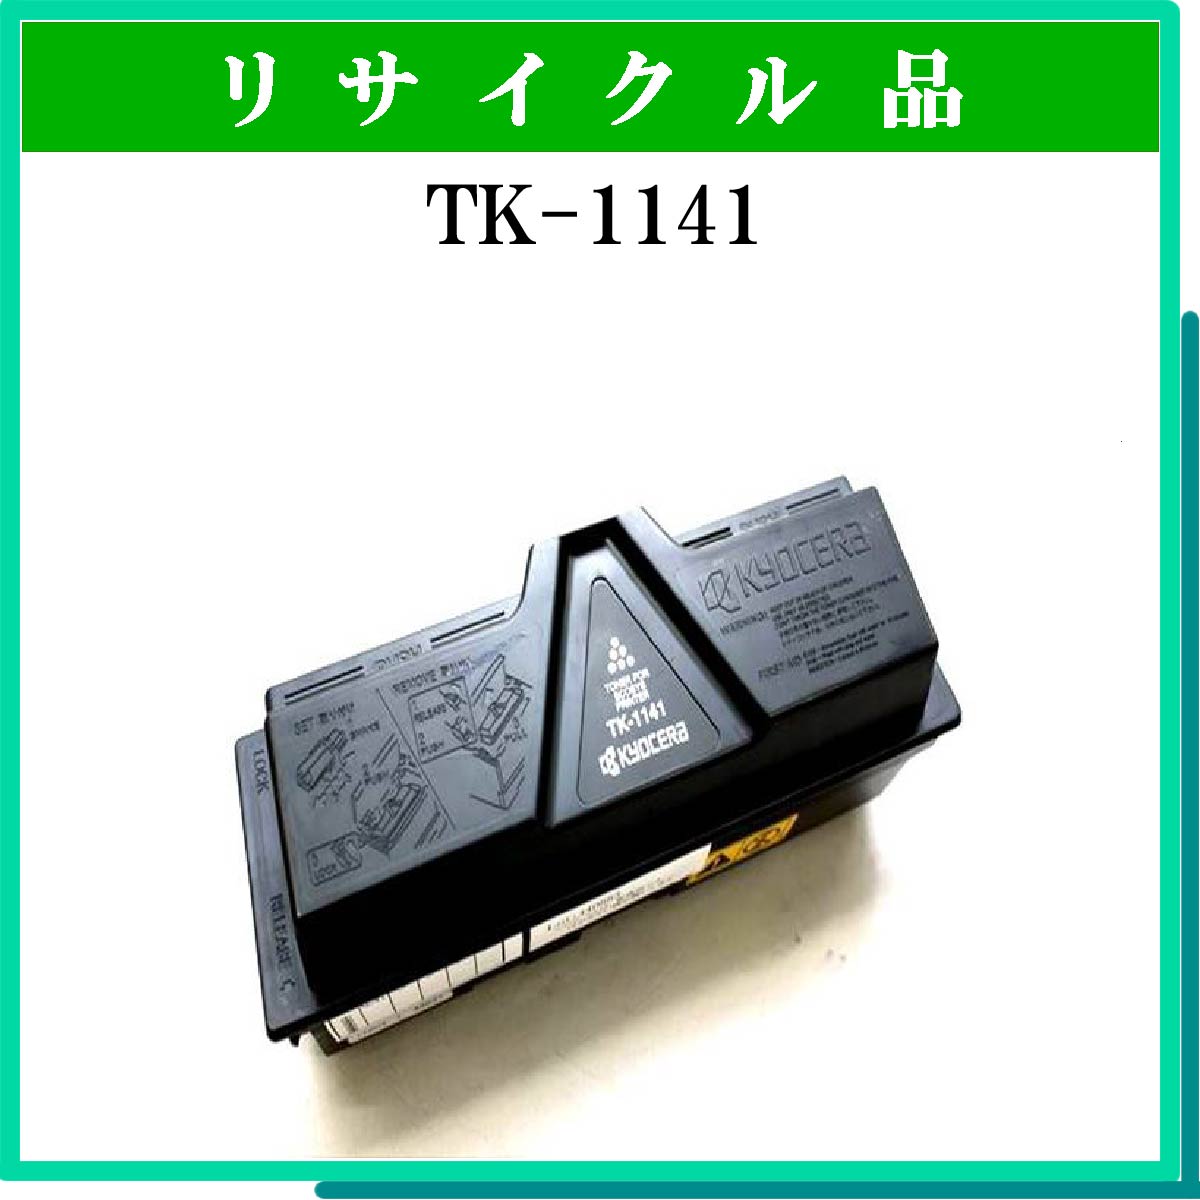 TK-1141